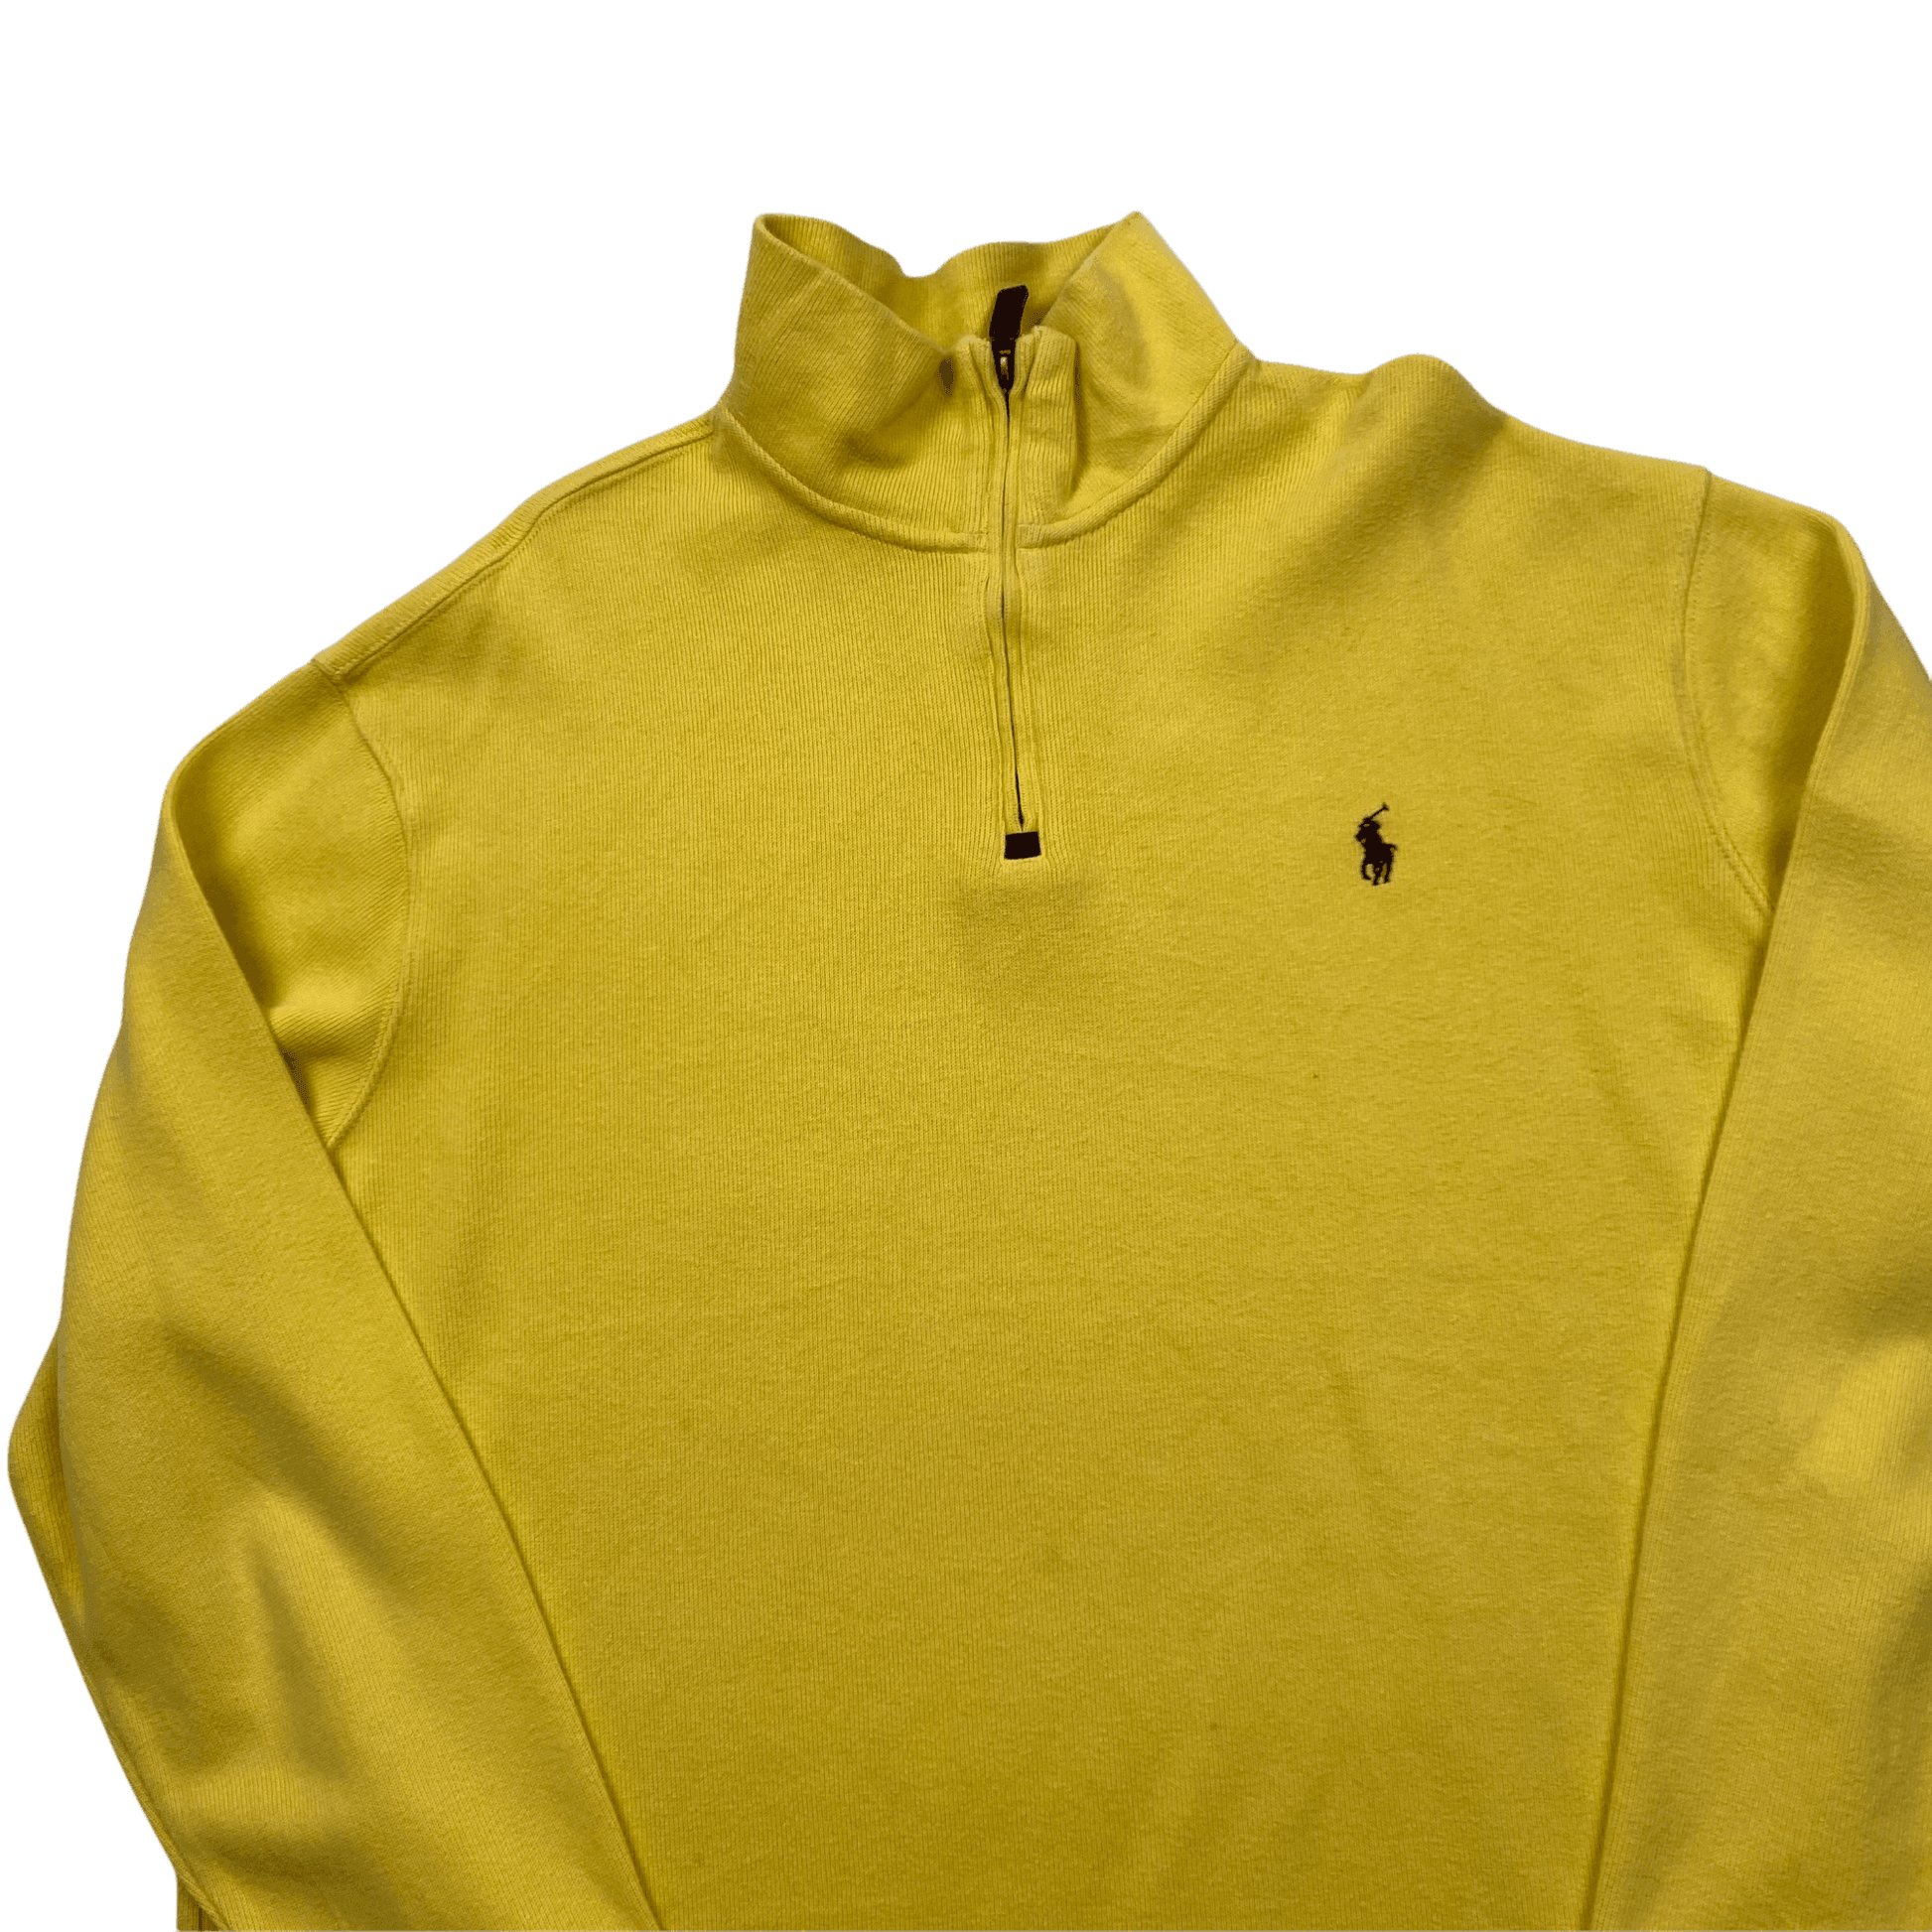 Vintage 90s Yellow Polo Ralph Lauren Quarter Zip Sweatshirt - Extra Large - The Streetwear Studio